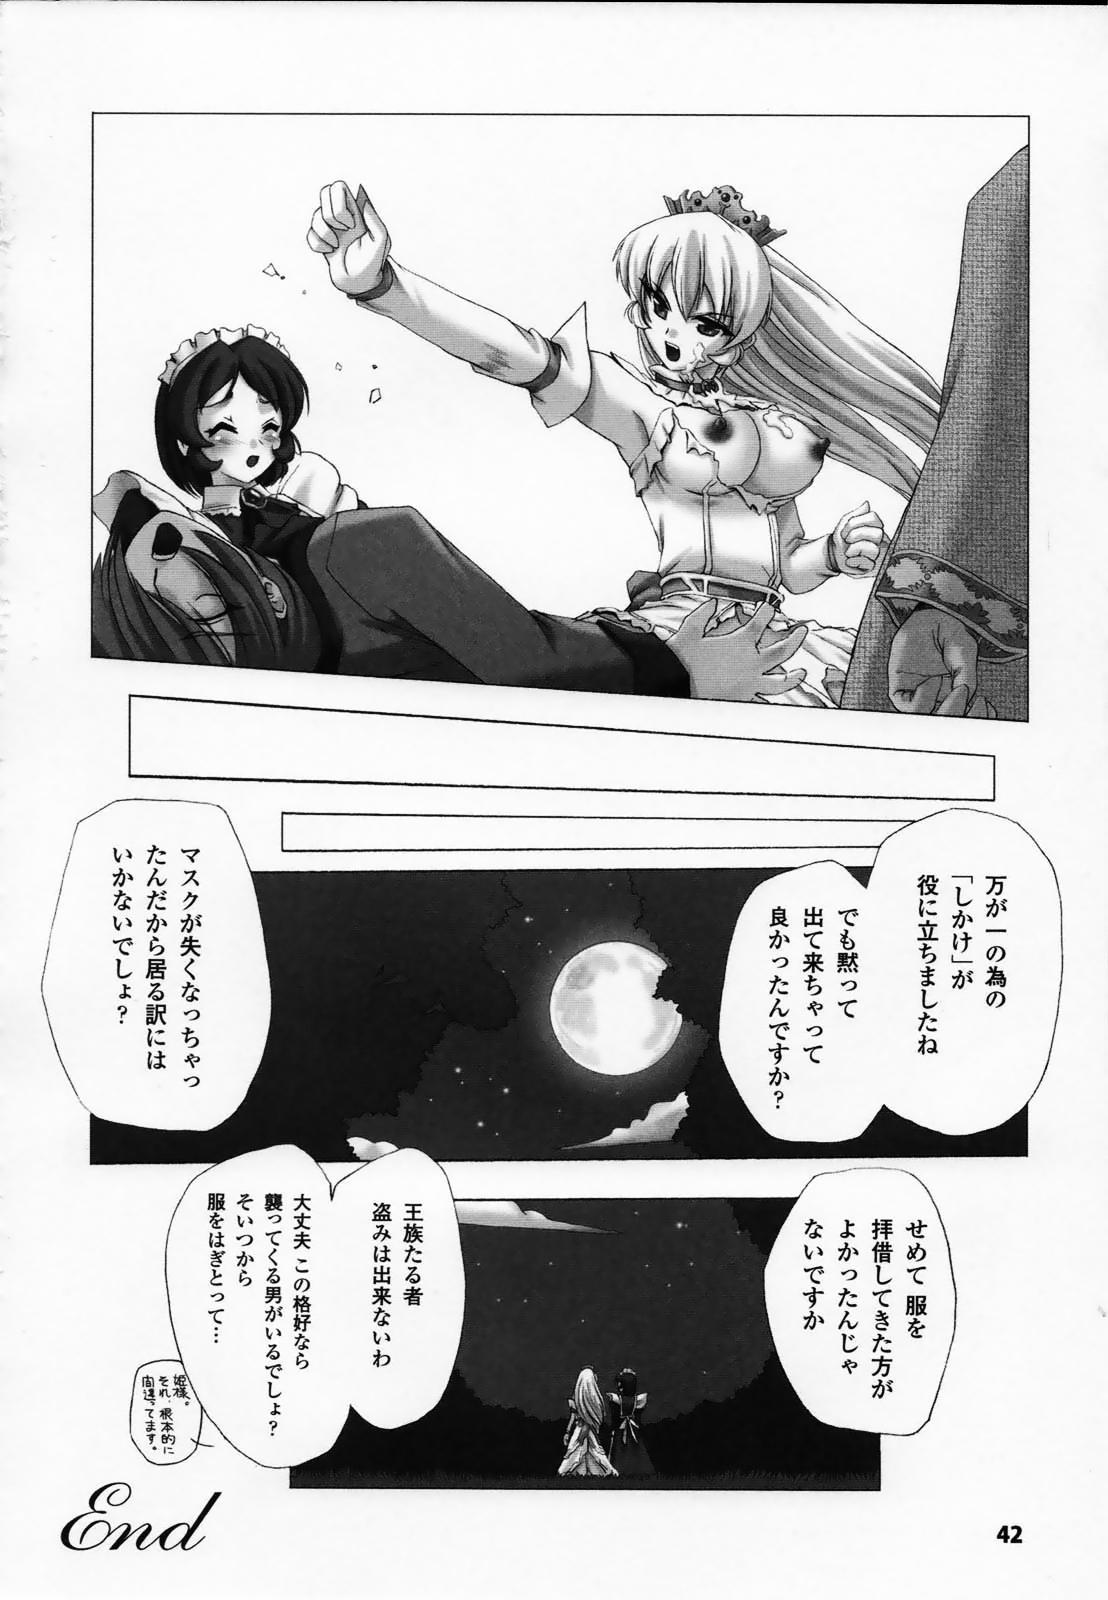 Shirayuri no Kenshi Anthology Comics 43